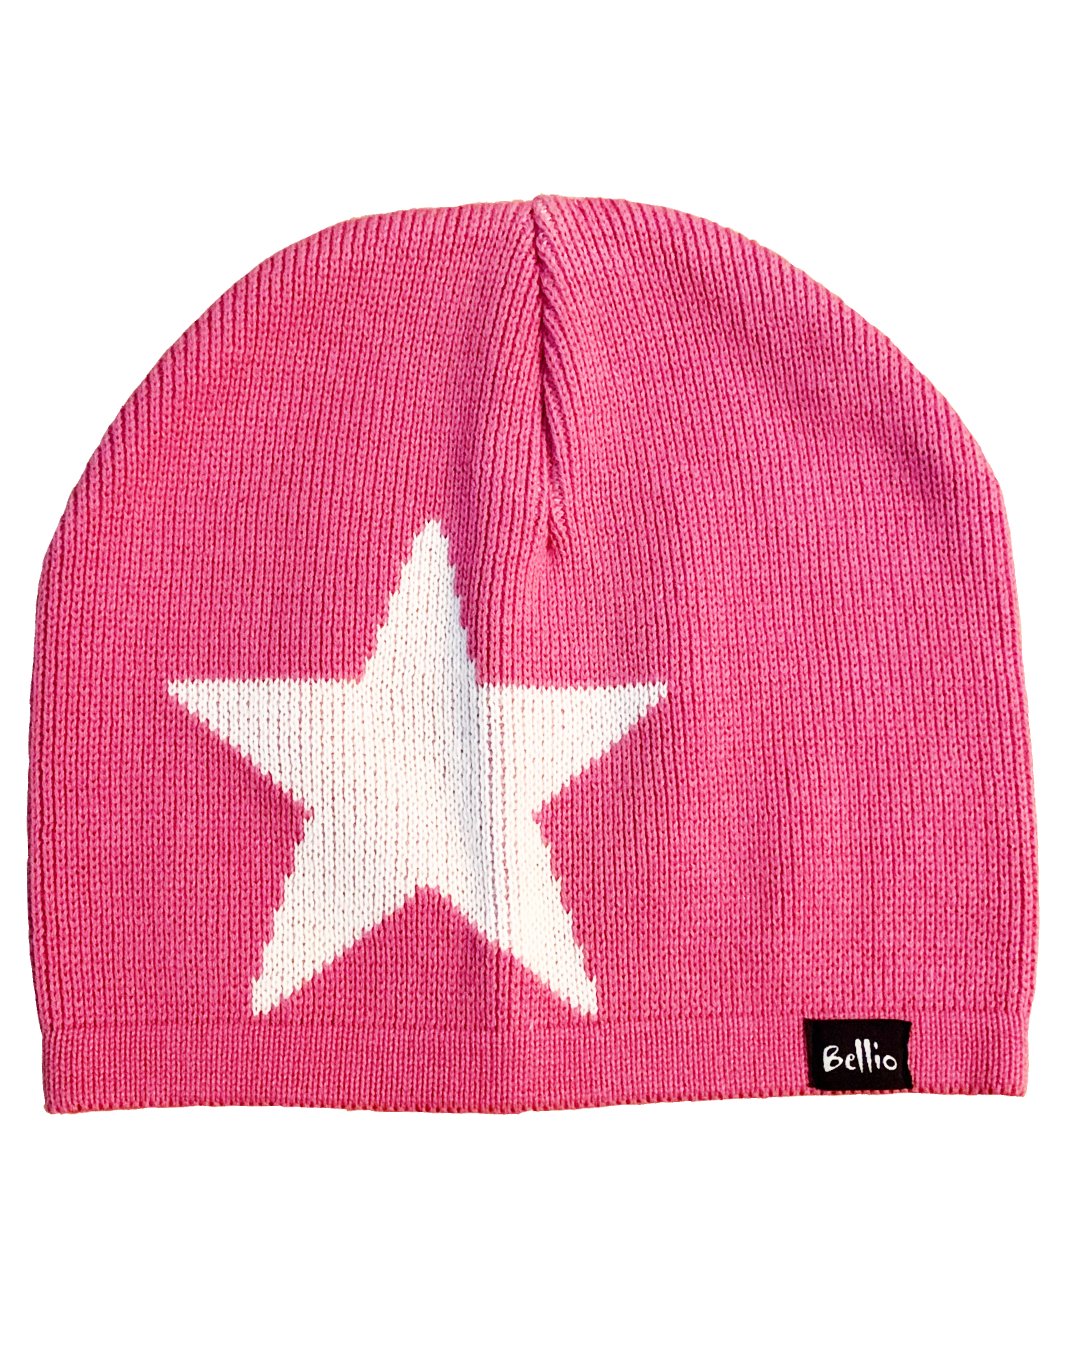 Strickmütze aus Biobaumwolle in Pink mit weißem Stern